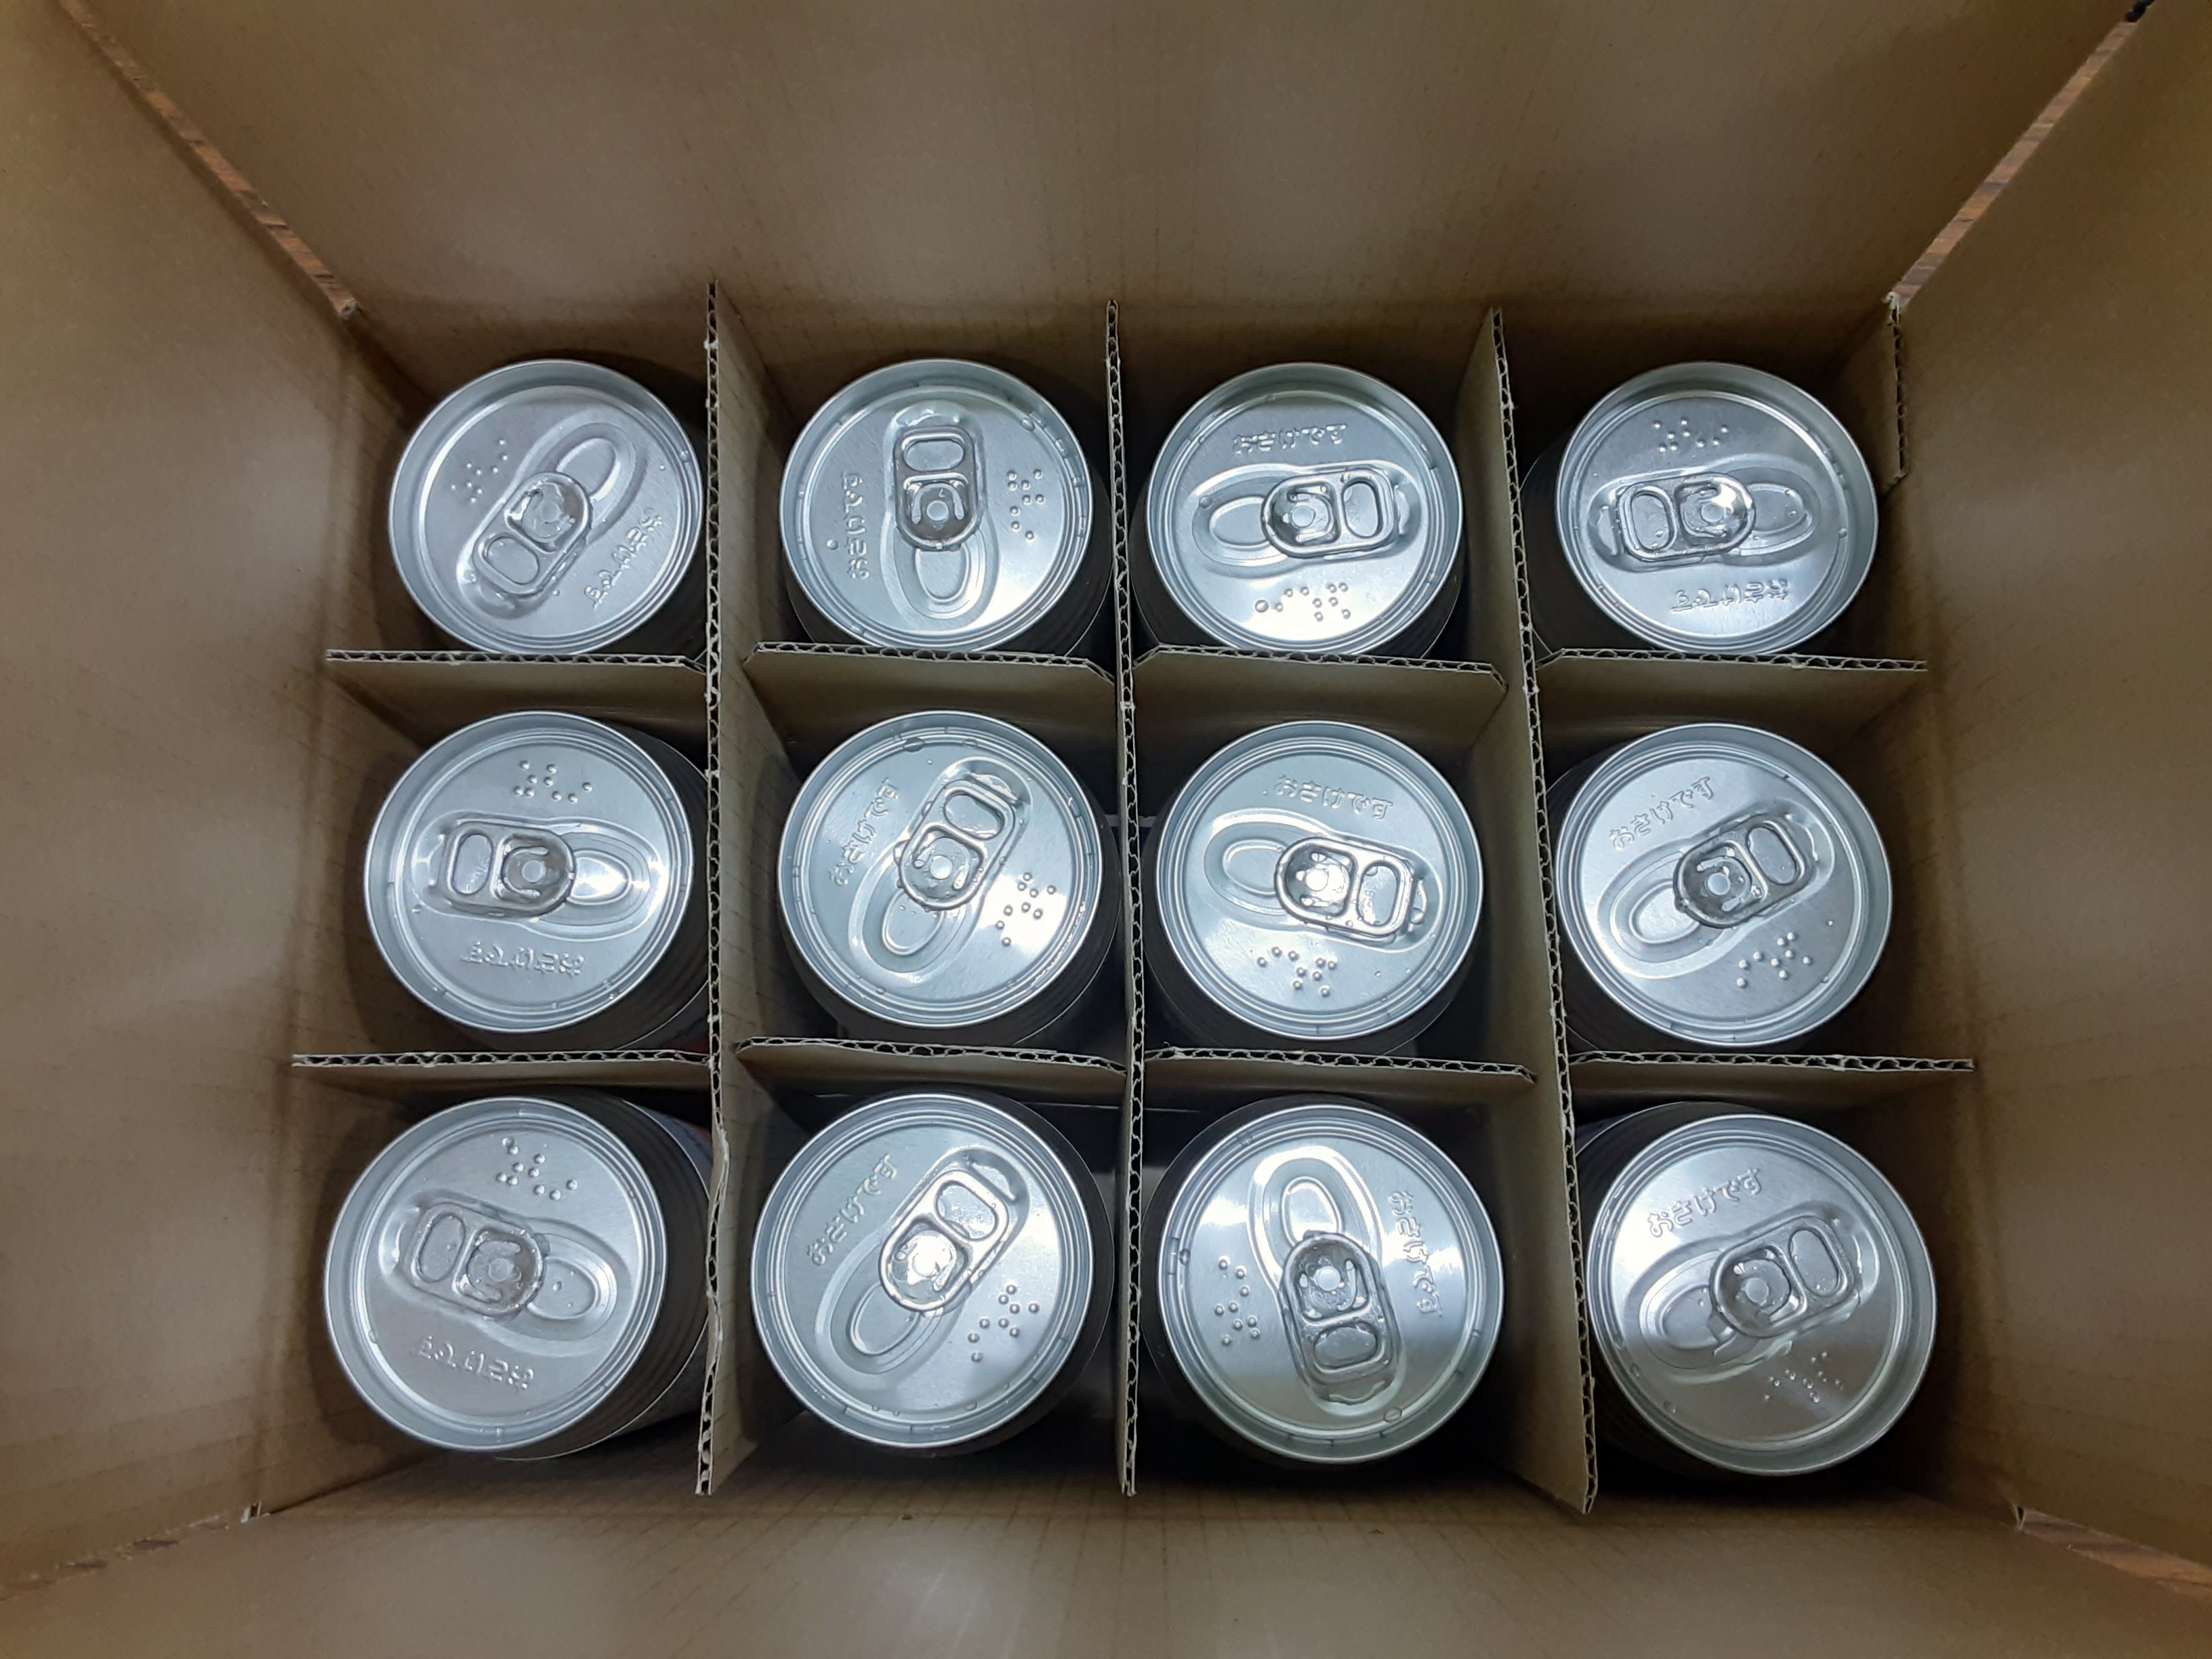 【奈良県のクラフトビール】CHORYOのクラフトビール 奈良県産米を使用した定番クラフトビール「ライスラガー」(350ml×12本) / クラフトビール 地ビール ラガービール